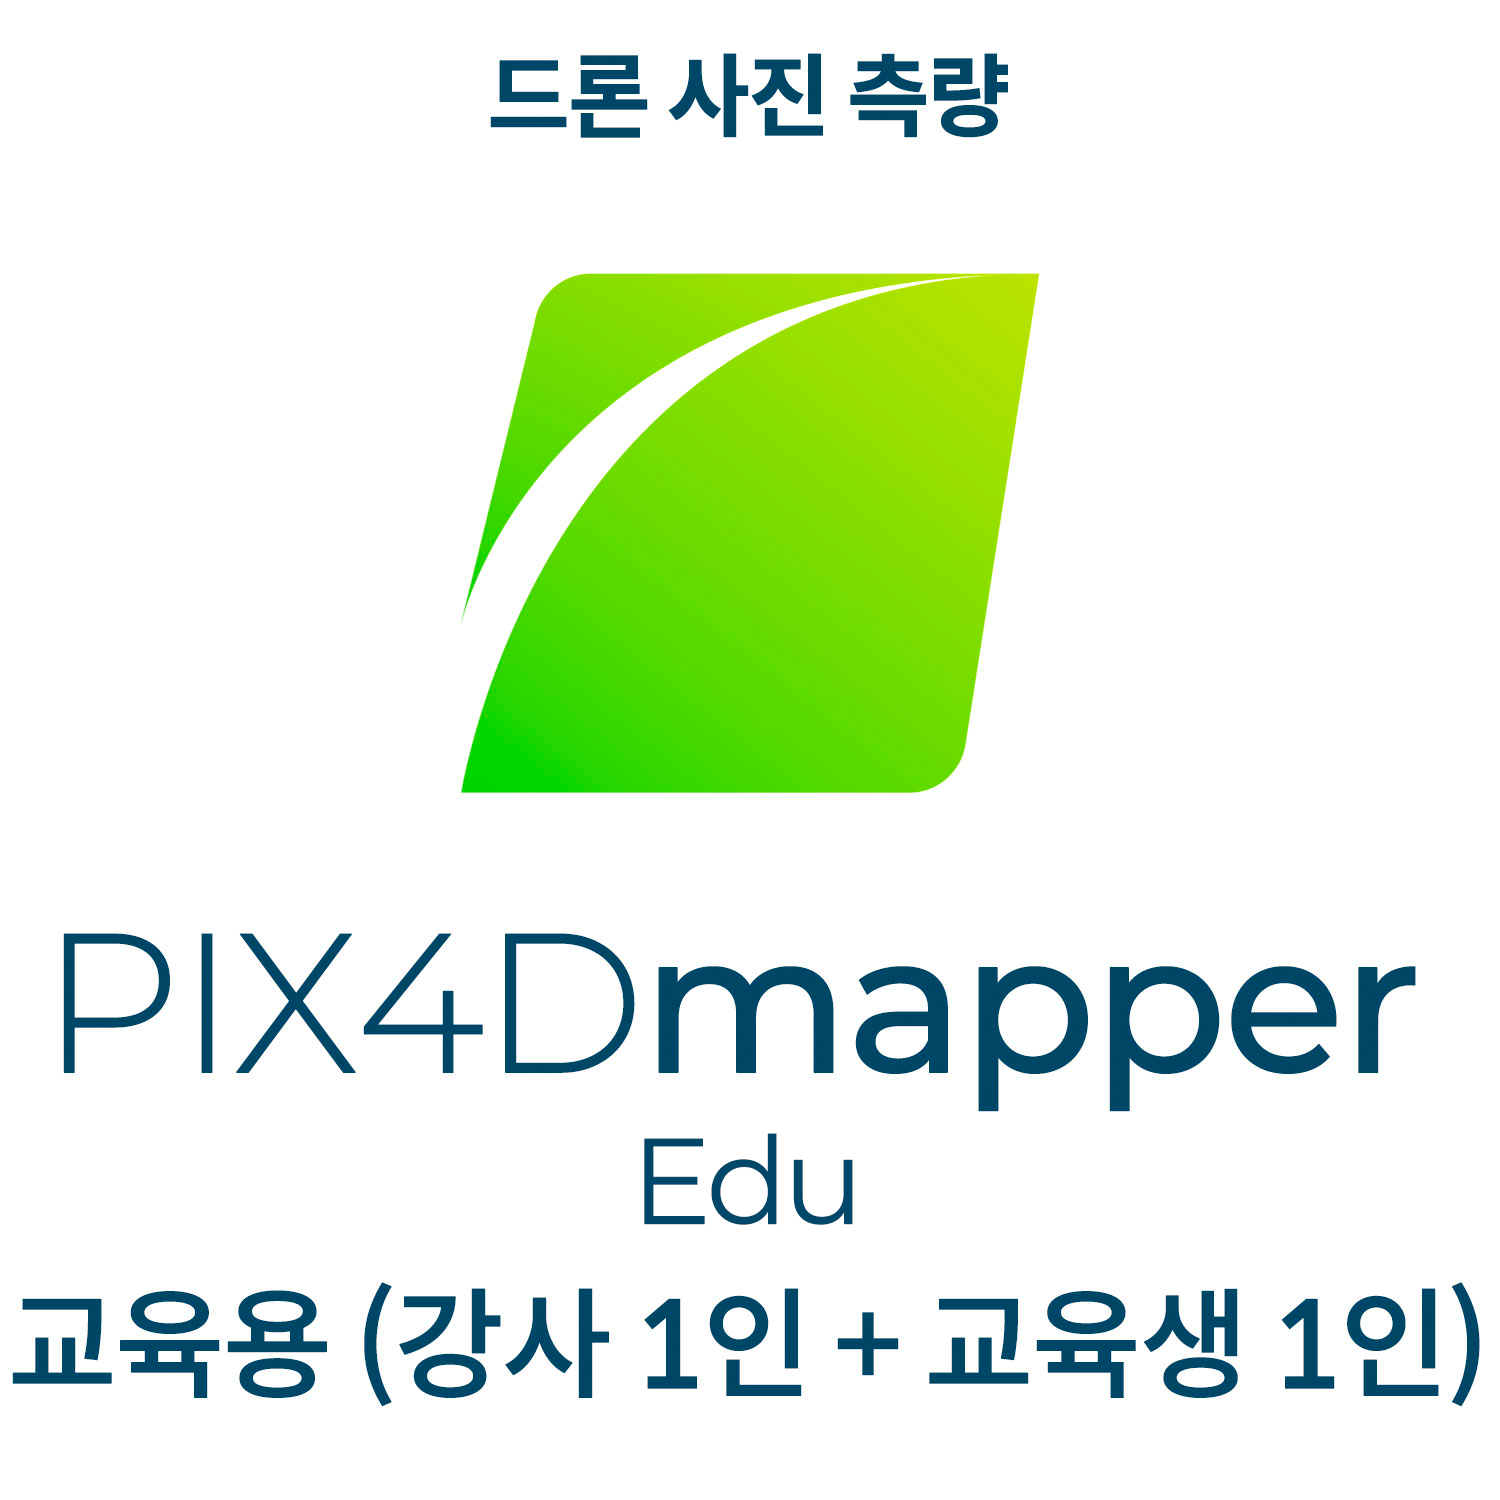 PIX4Dmapper EDU교육기관-학교, 관공서(강사 1인 + 교육생 1인)(영구소유) 헬셀